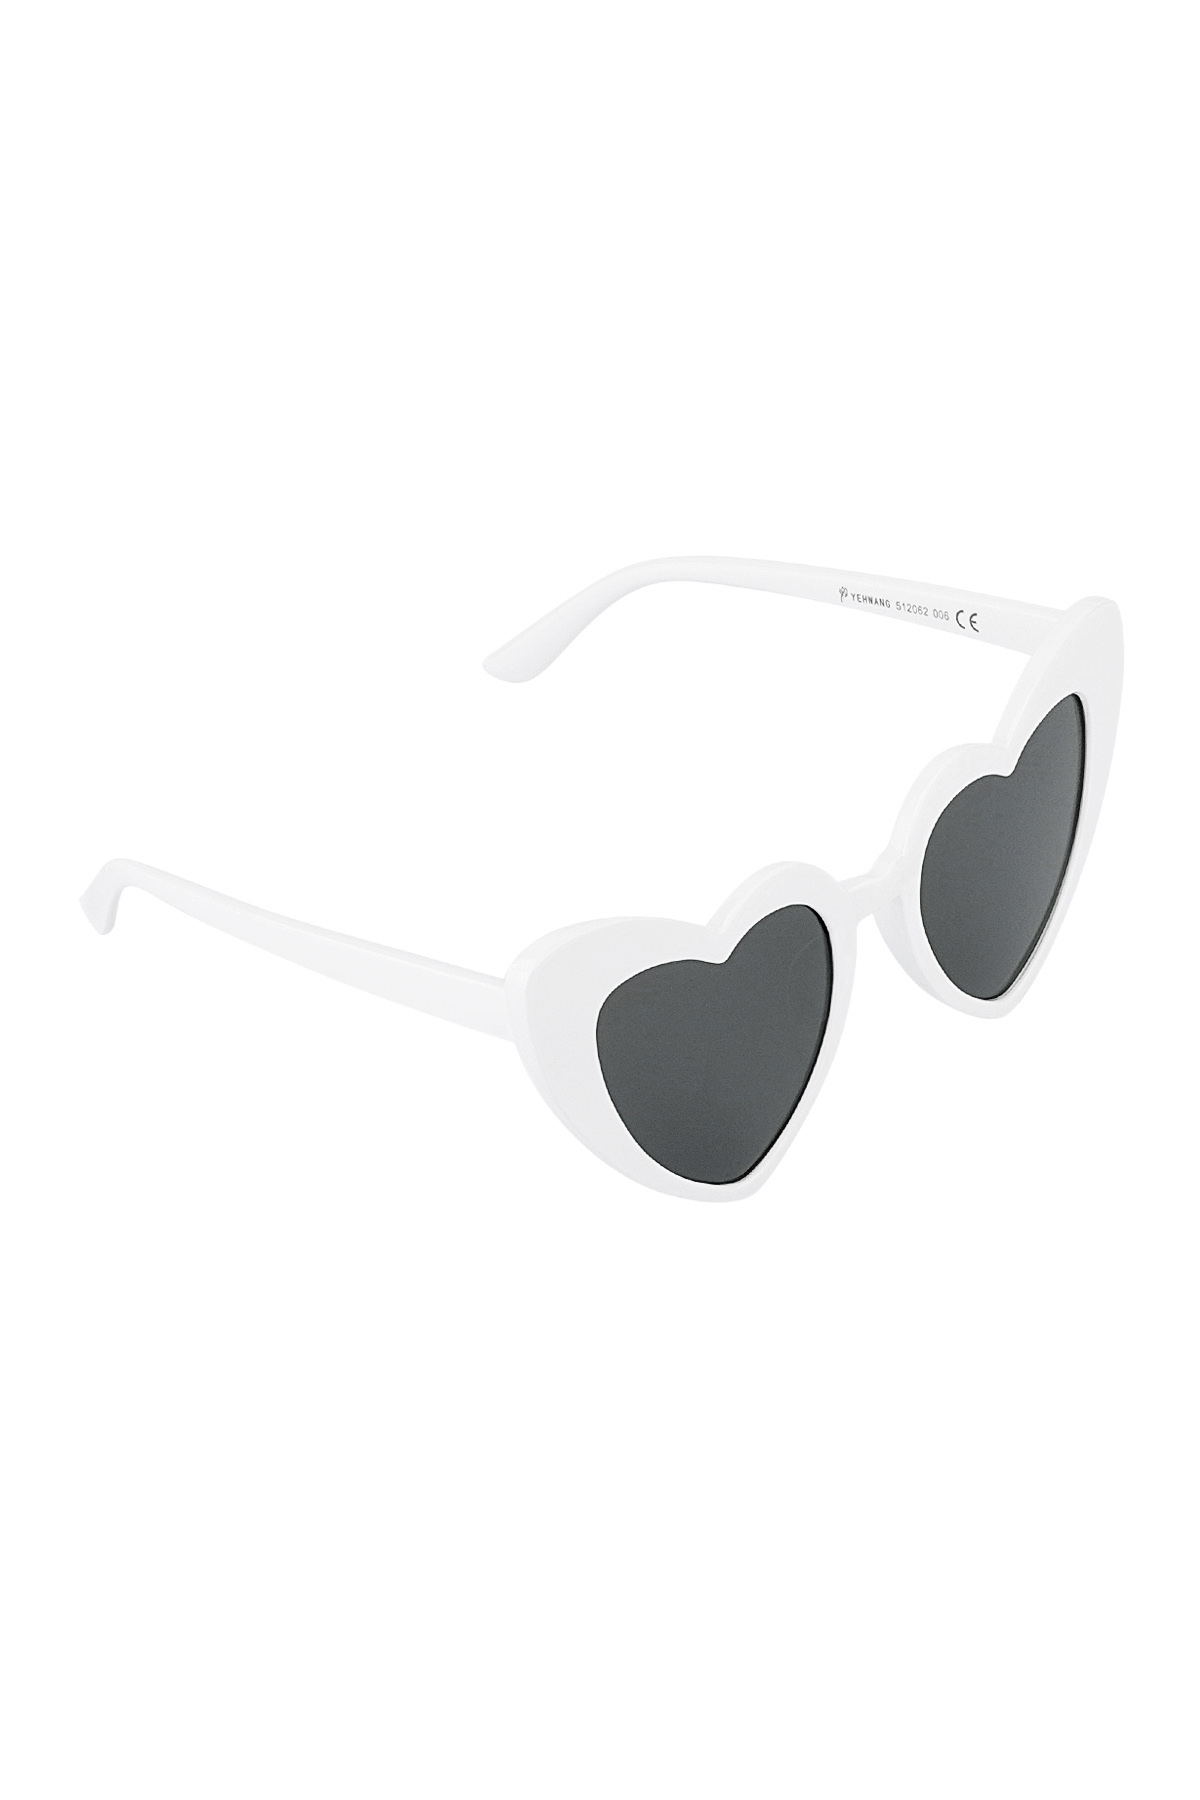 L'amore per gli occhiali da sole è nell'aria: in bianco e nero